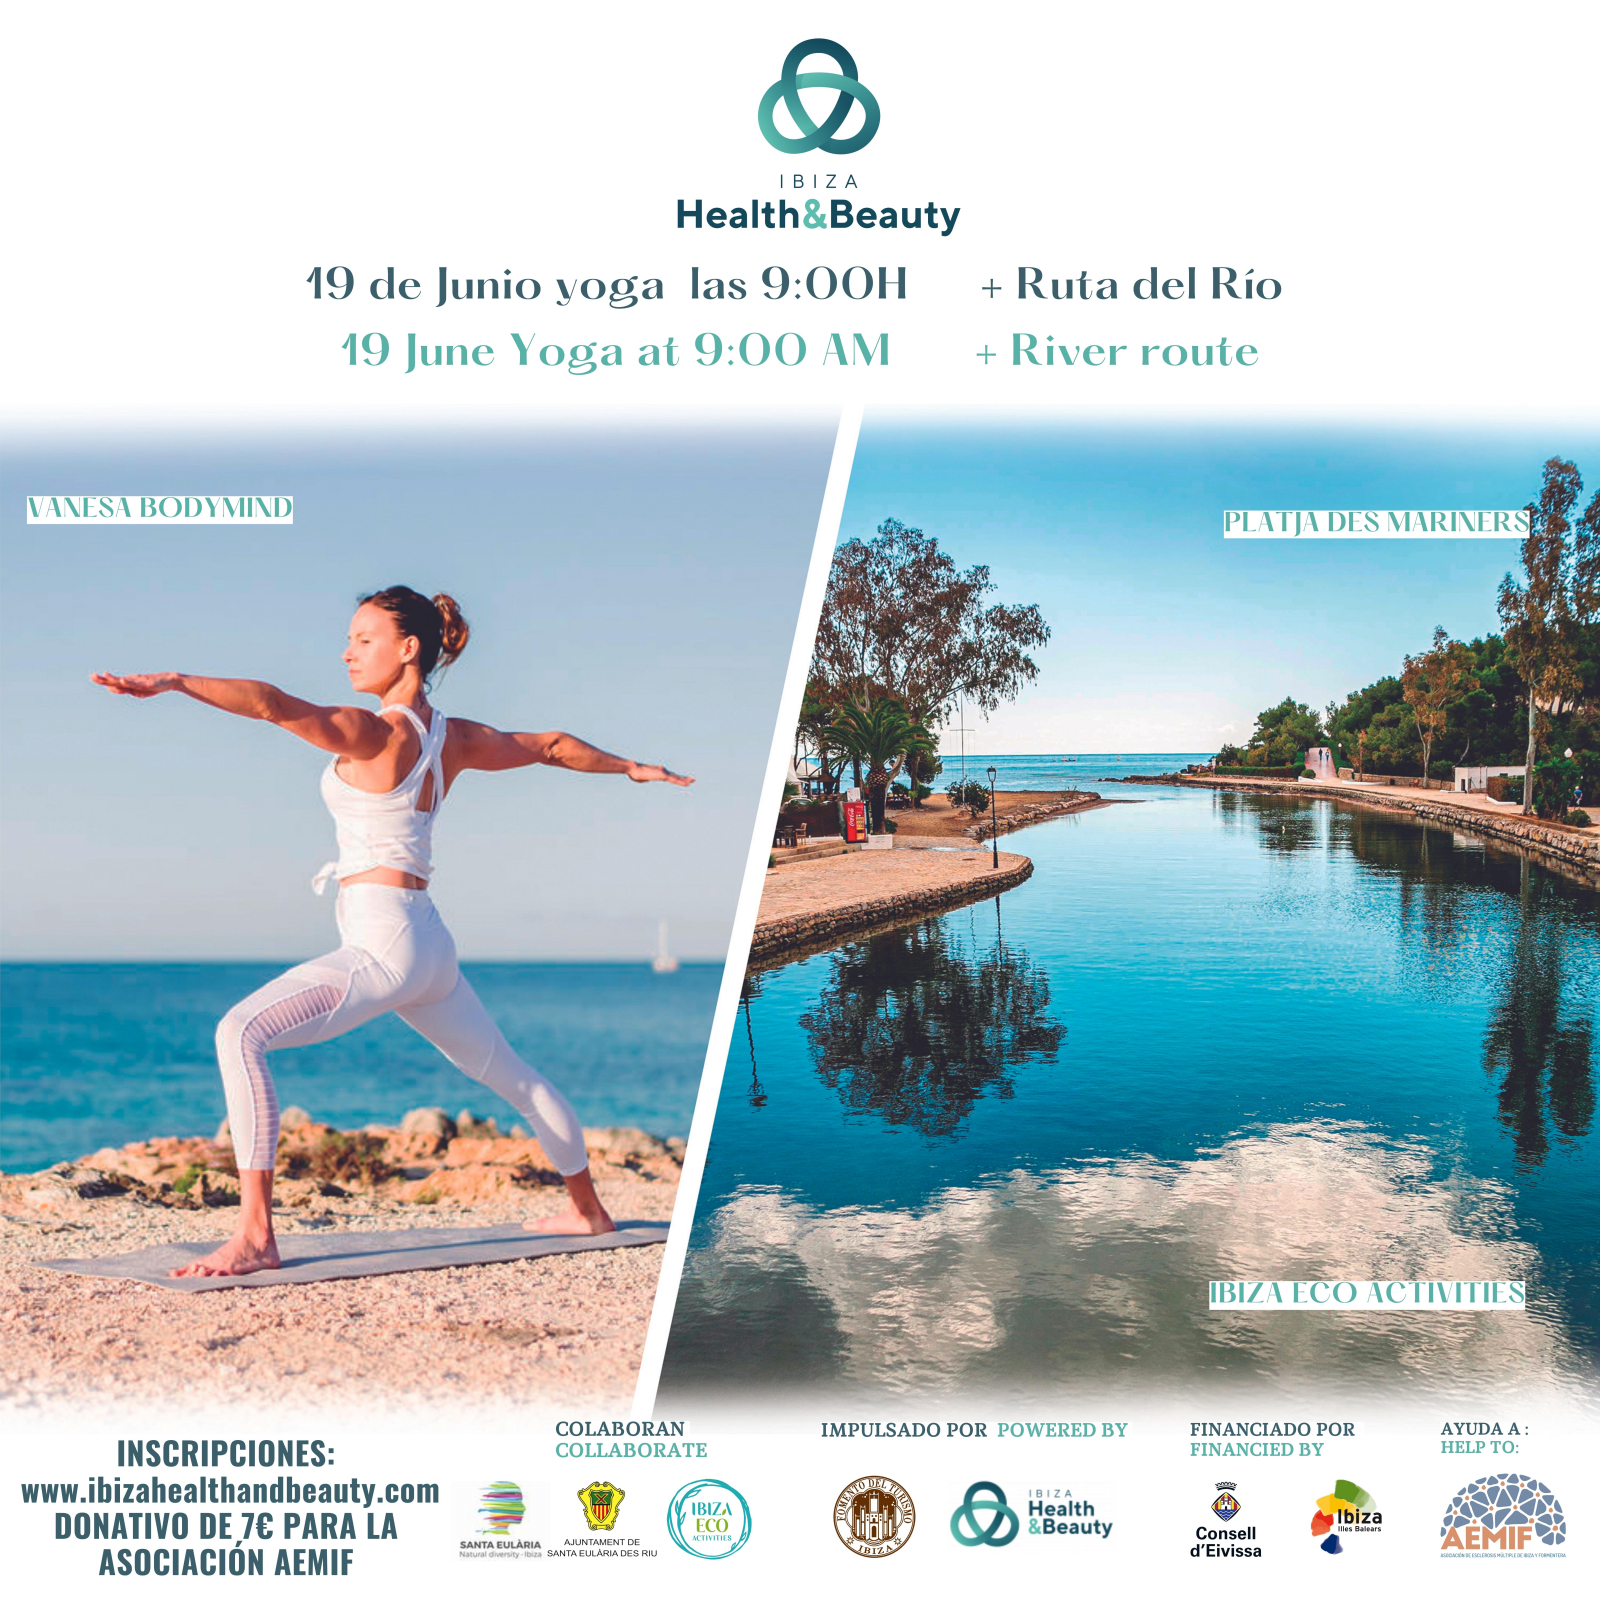 Ibiza Yoga Week - 19 June - Santa Eularia